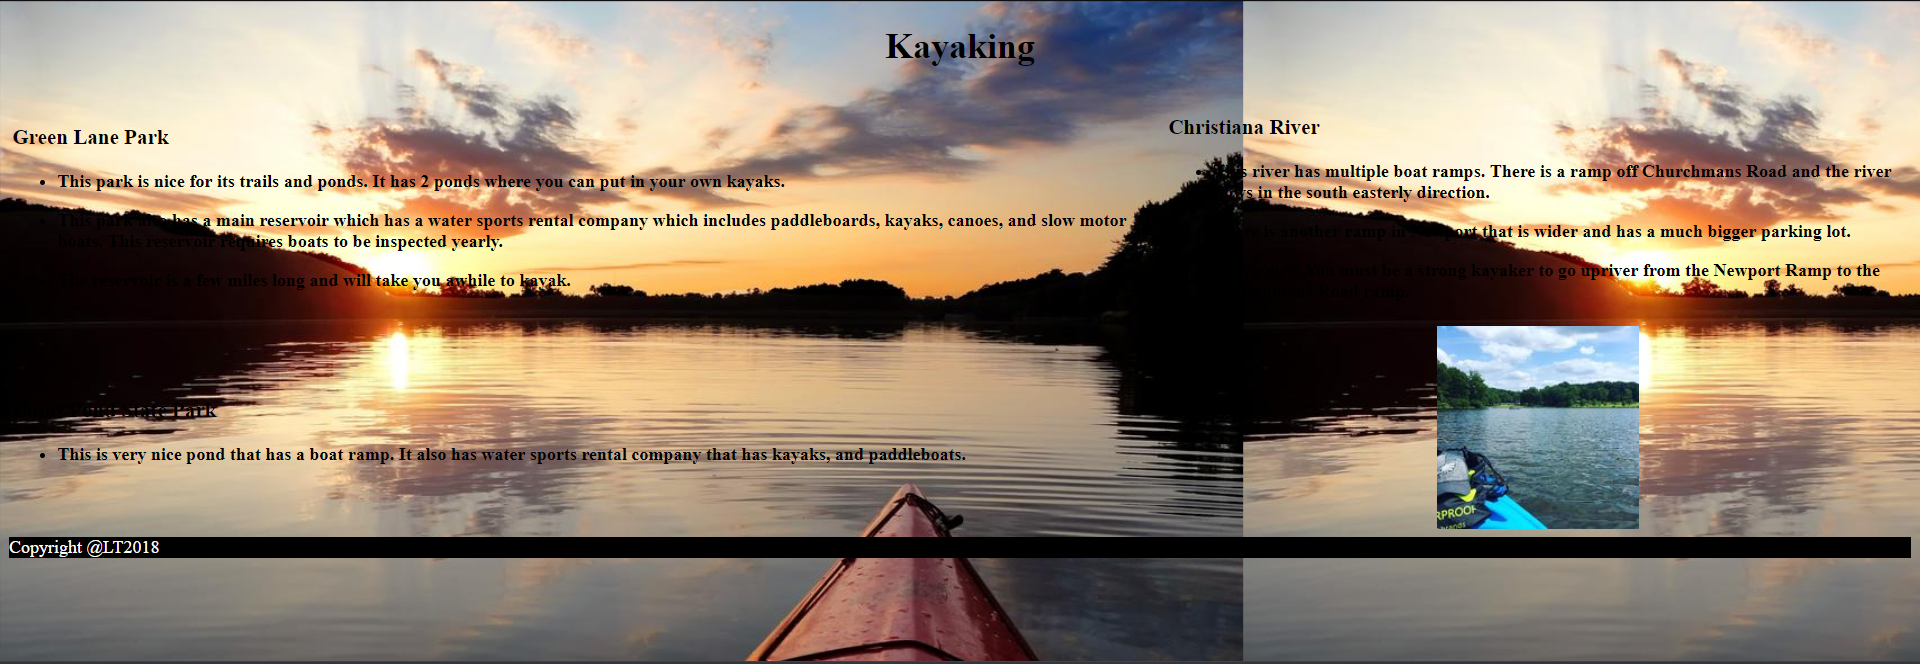 Kayaking website image